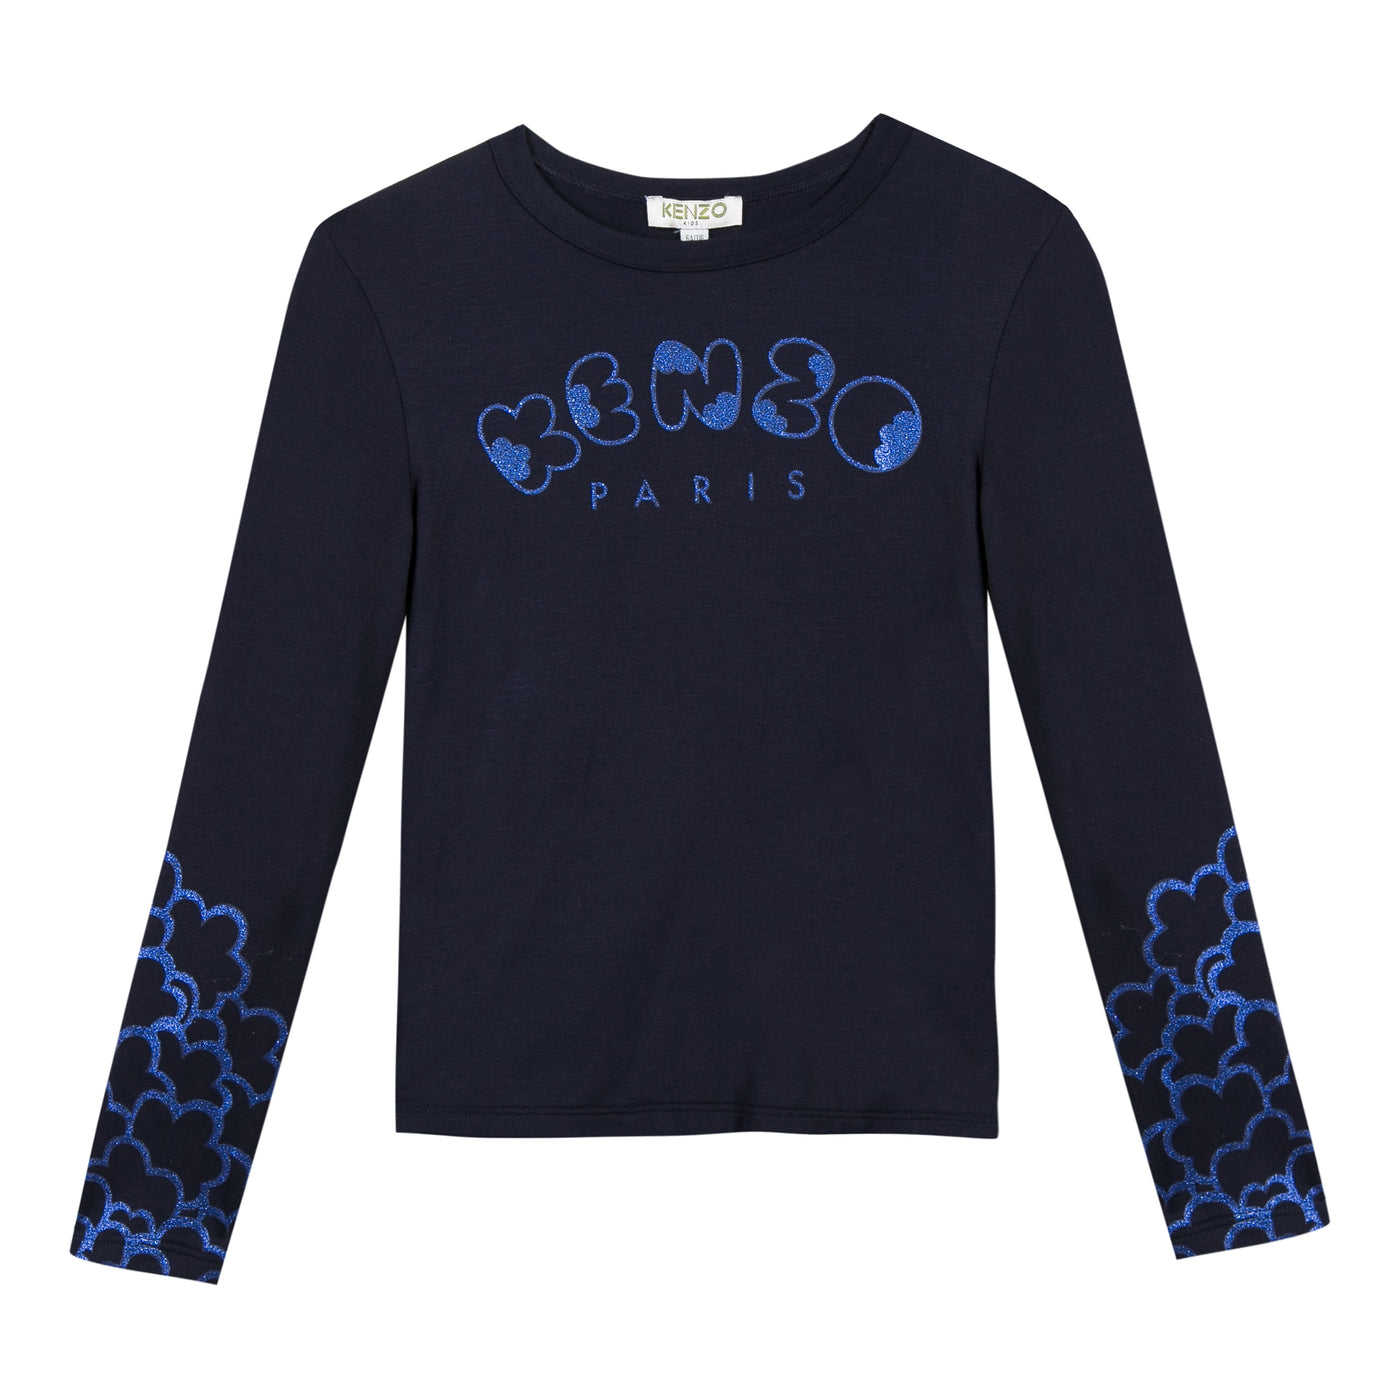 Kenzo Kids Long Sleeve Tee Shirt in Dark Blue K10188 49